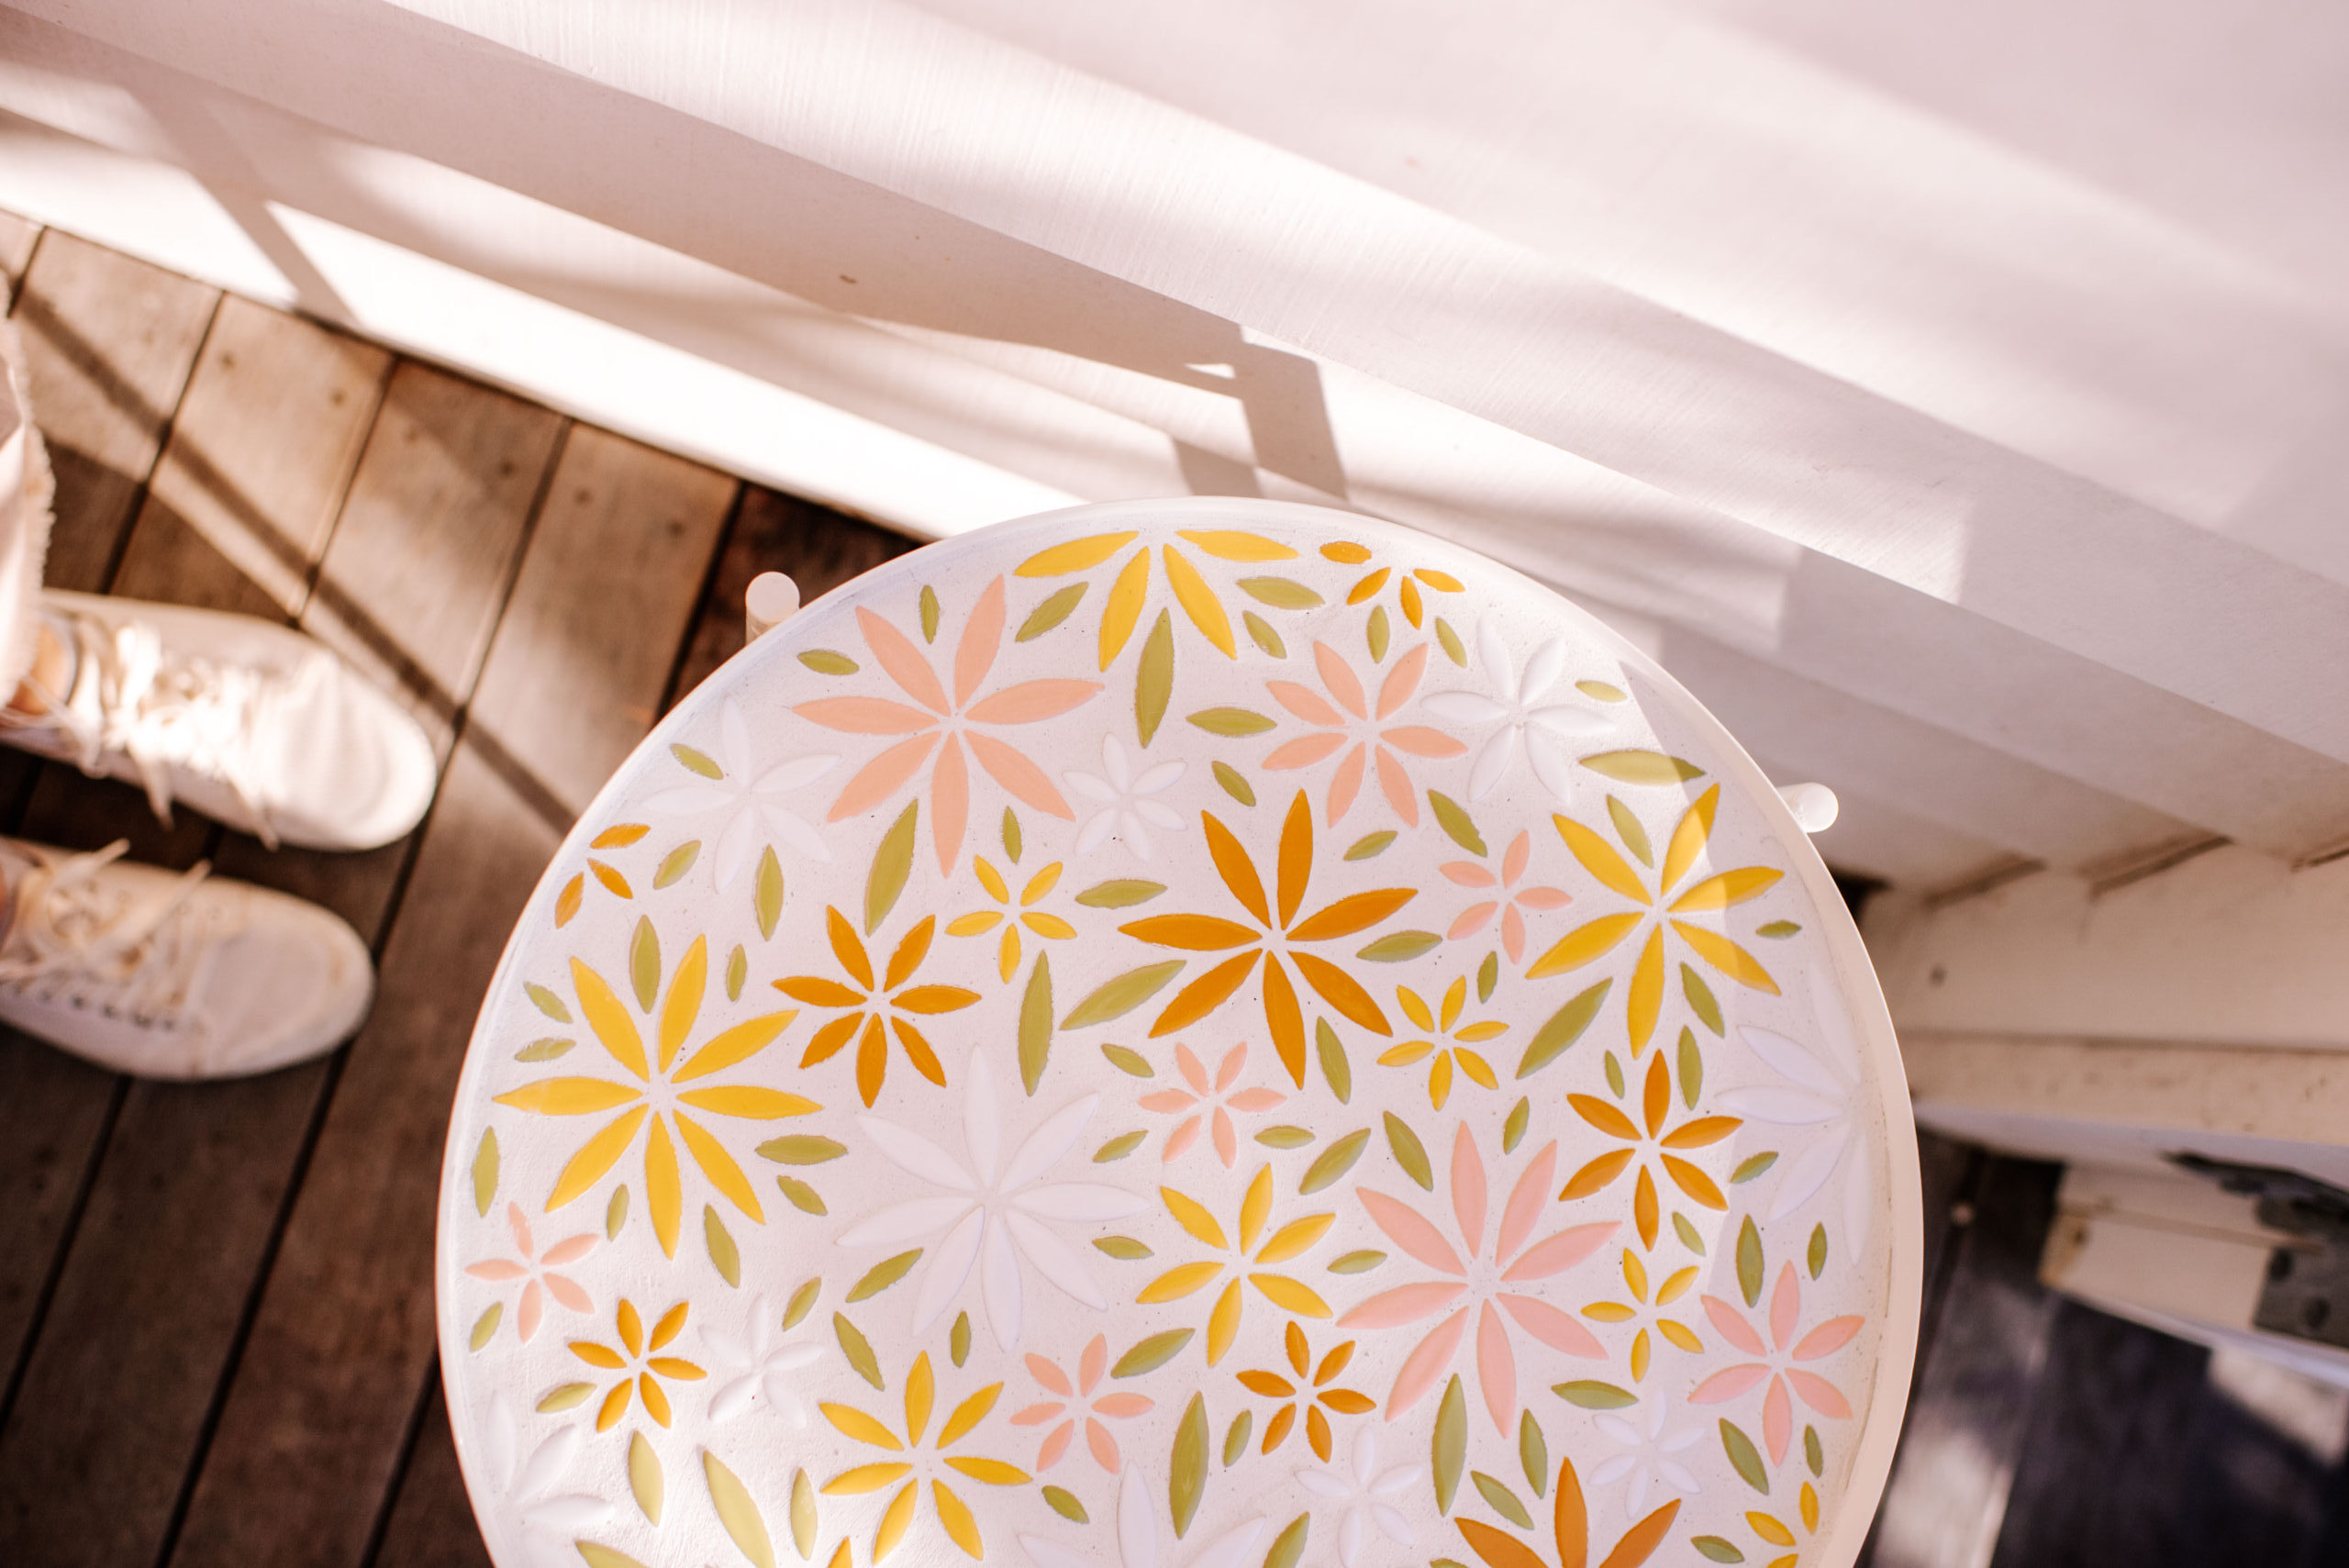 Table customisée avec de la mosaique sur le plateau et formant un motif de fleurs pastels